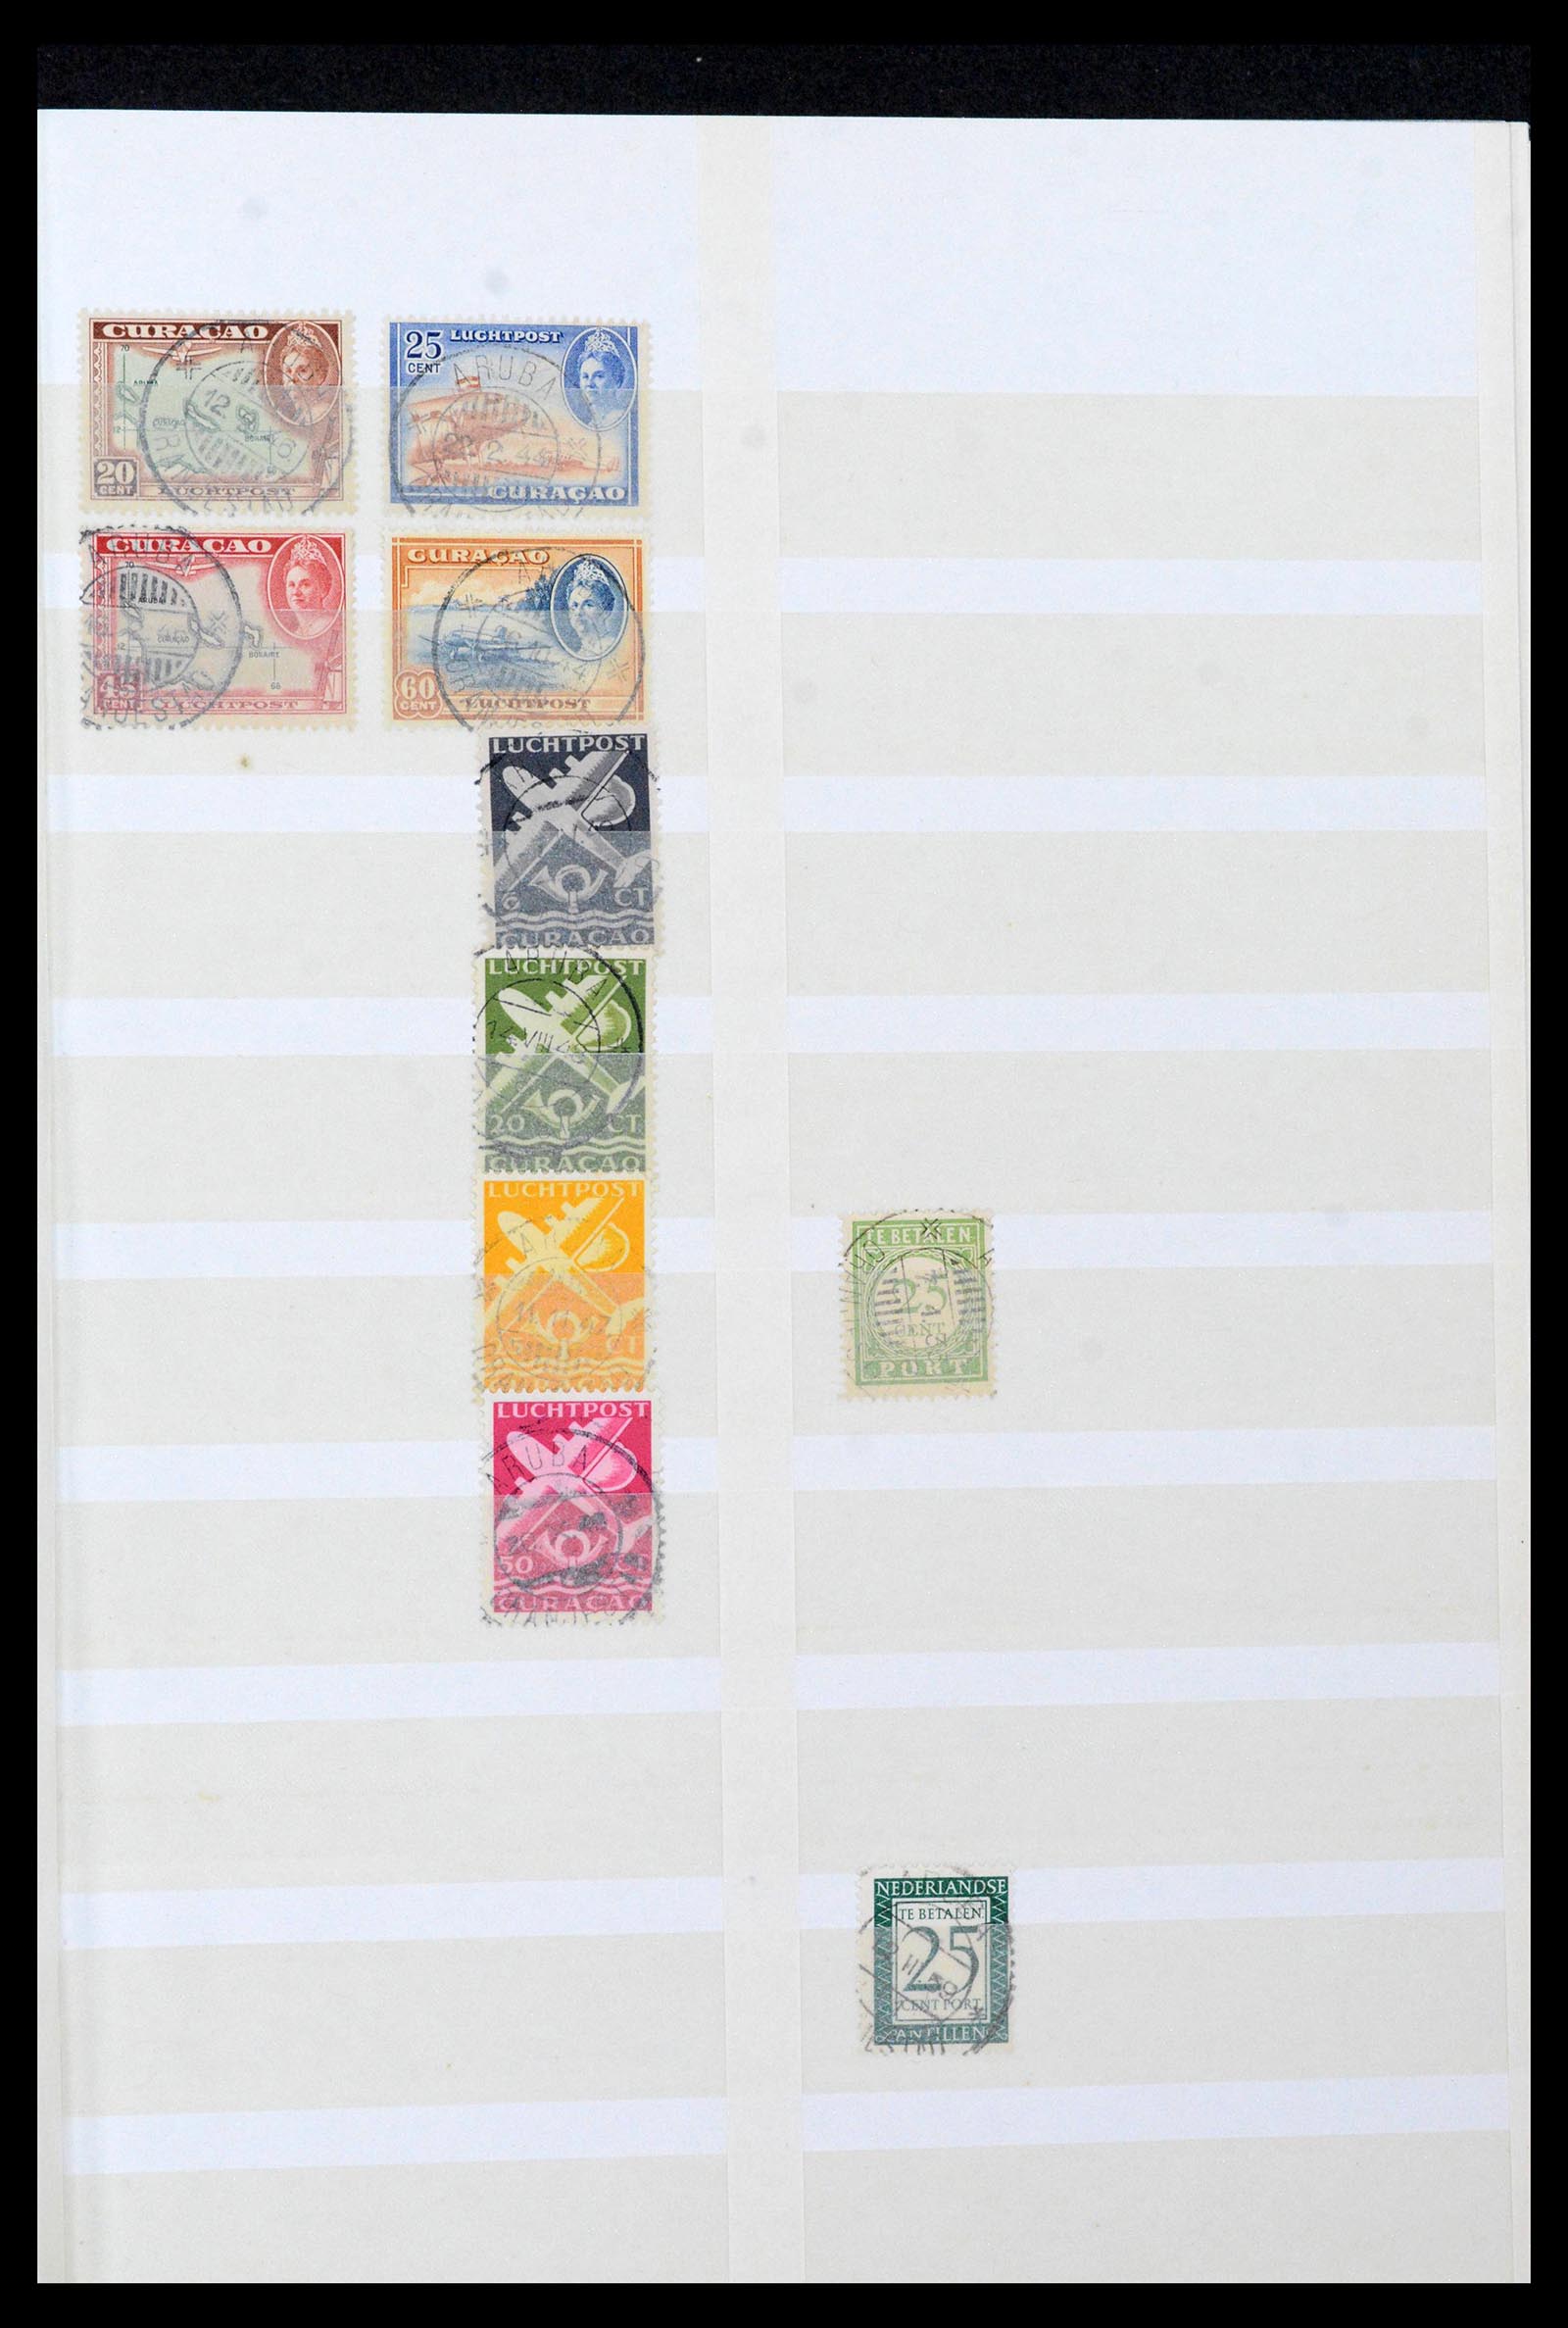 39541 0010 - Postzegelverzameling 39541 Curaçao/Antillen stempels 1873-1970.